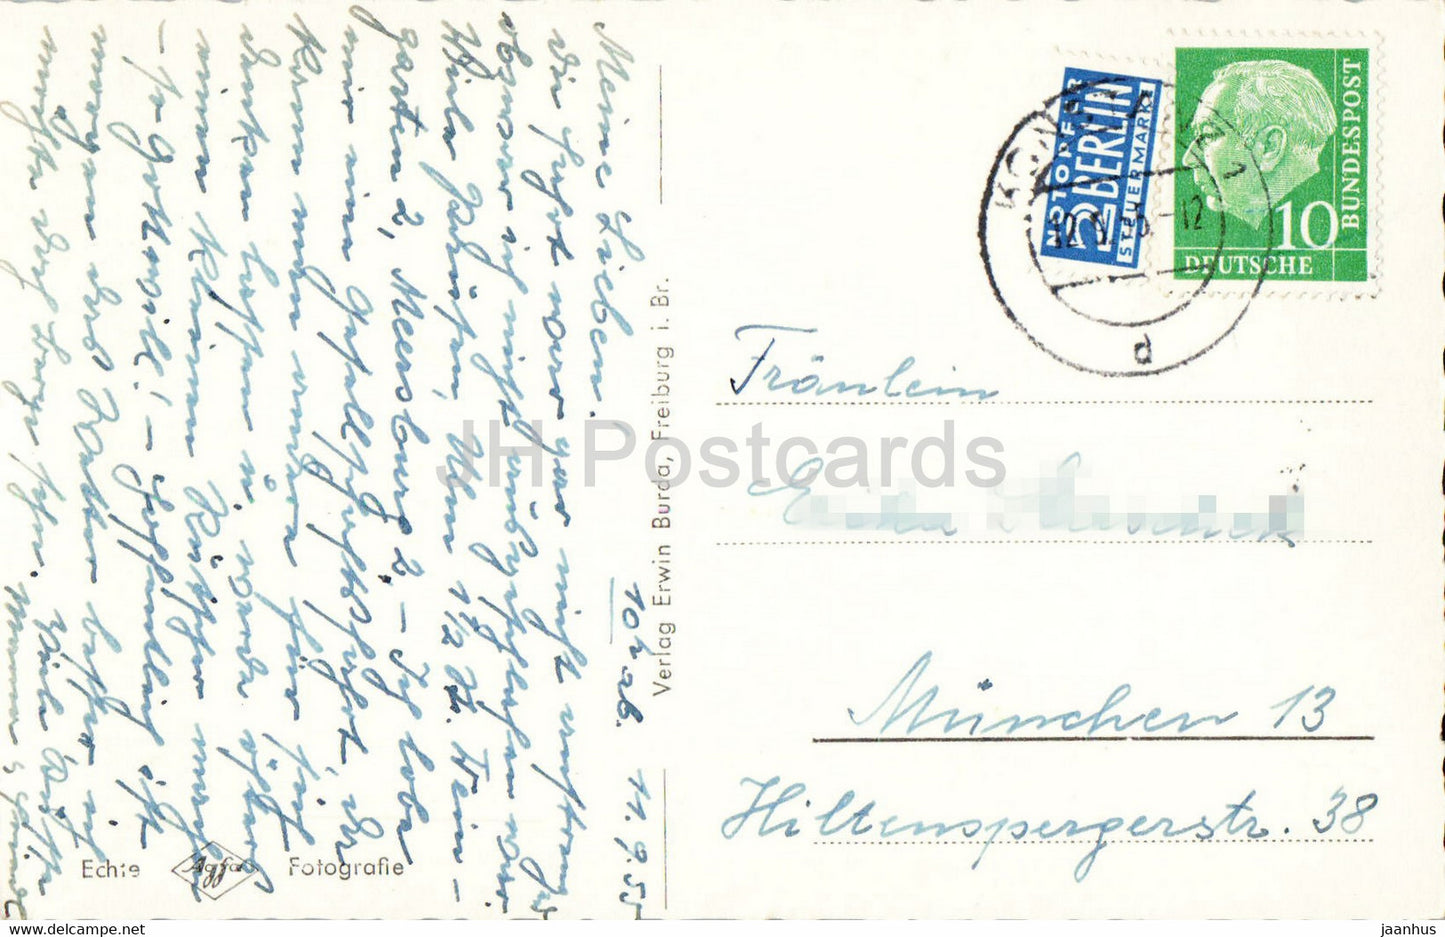 Konstanz - Rheinbrücke - Brücke - alte Postkarte - 1955 - Deutschland - gebraucht